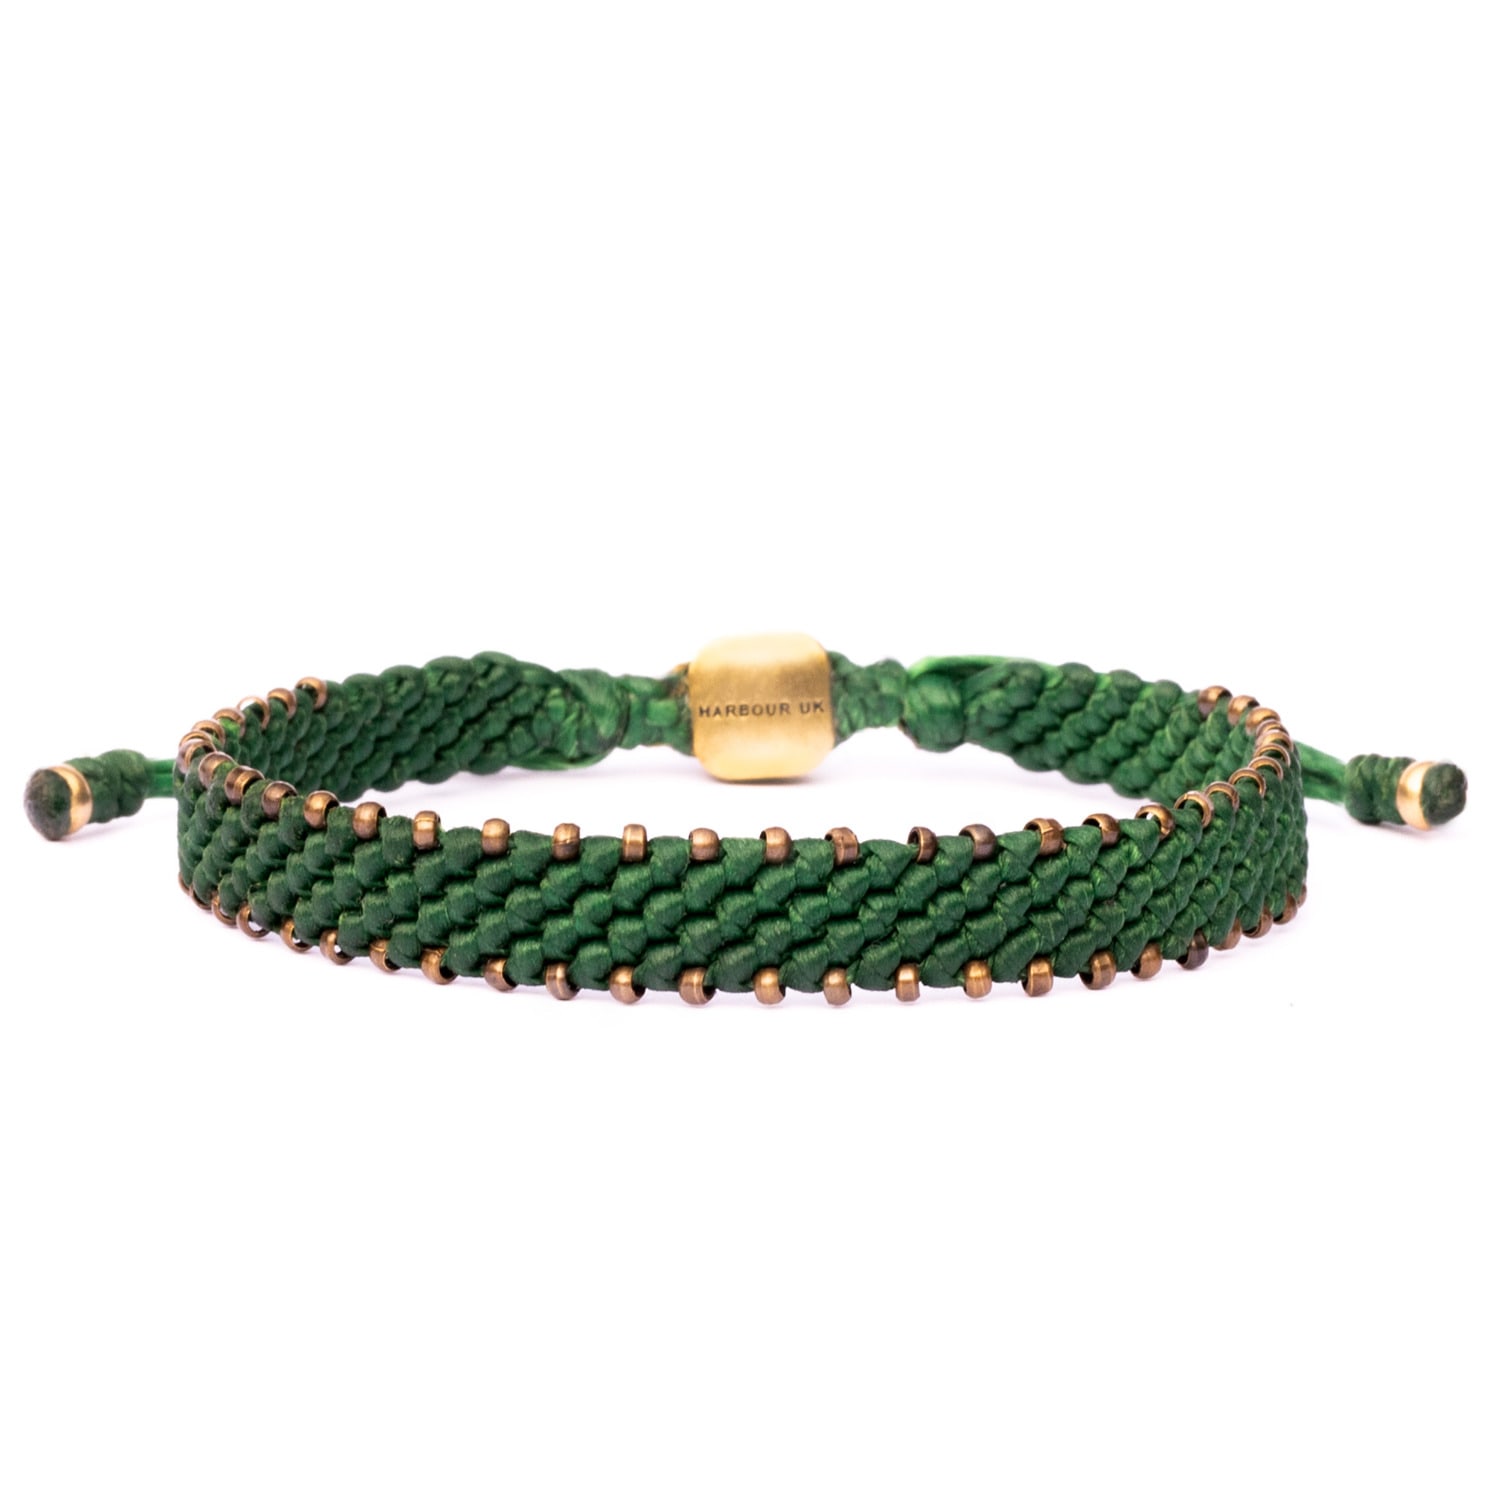 Bronze & Green Rope Bracelet For Men - Green Harbour UK Bracelets